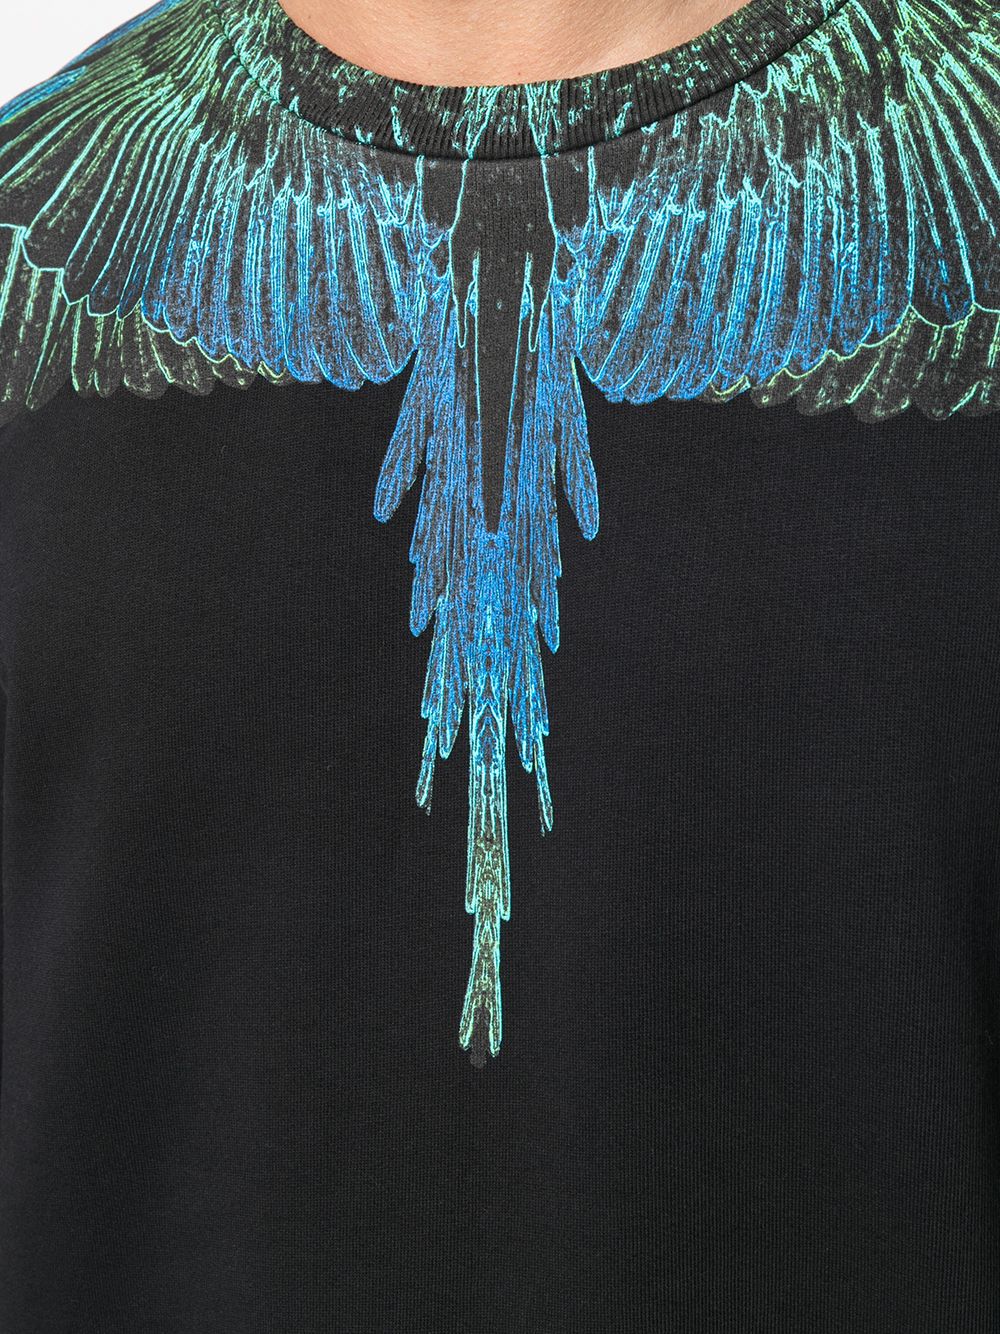 Marcelo Burlon County Of Milan Wings Print Sweatshirt - Farfetch